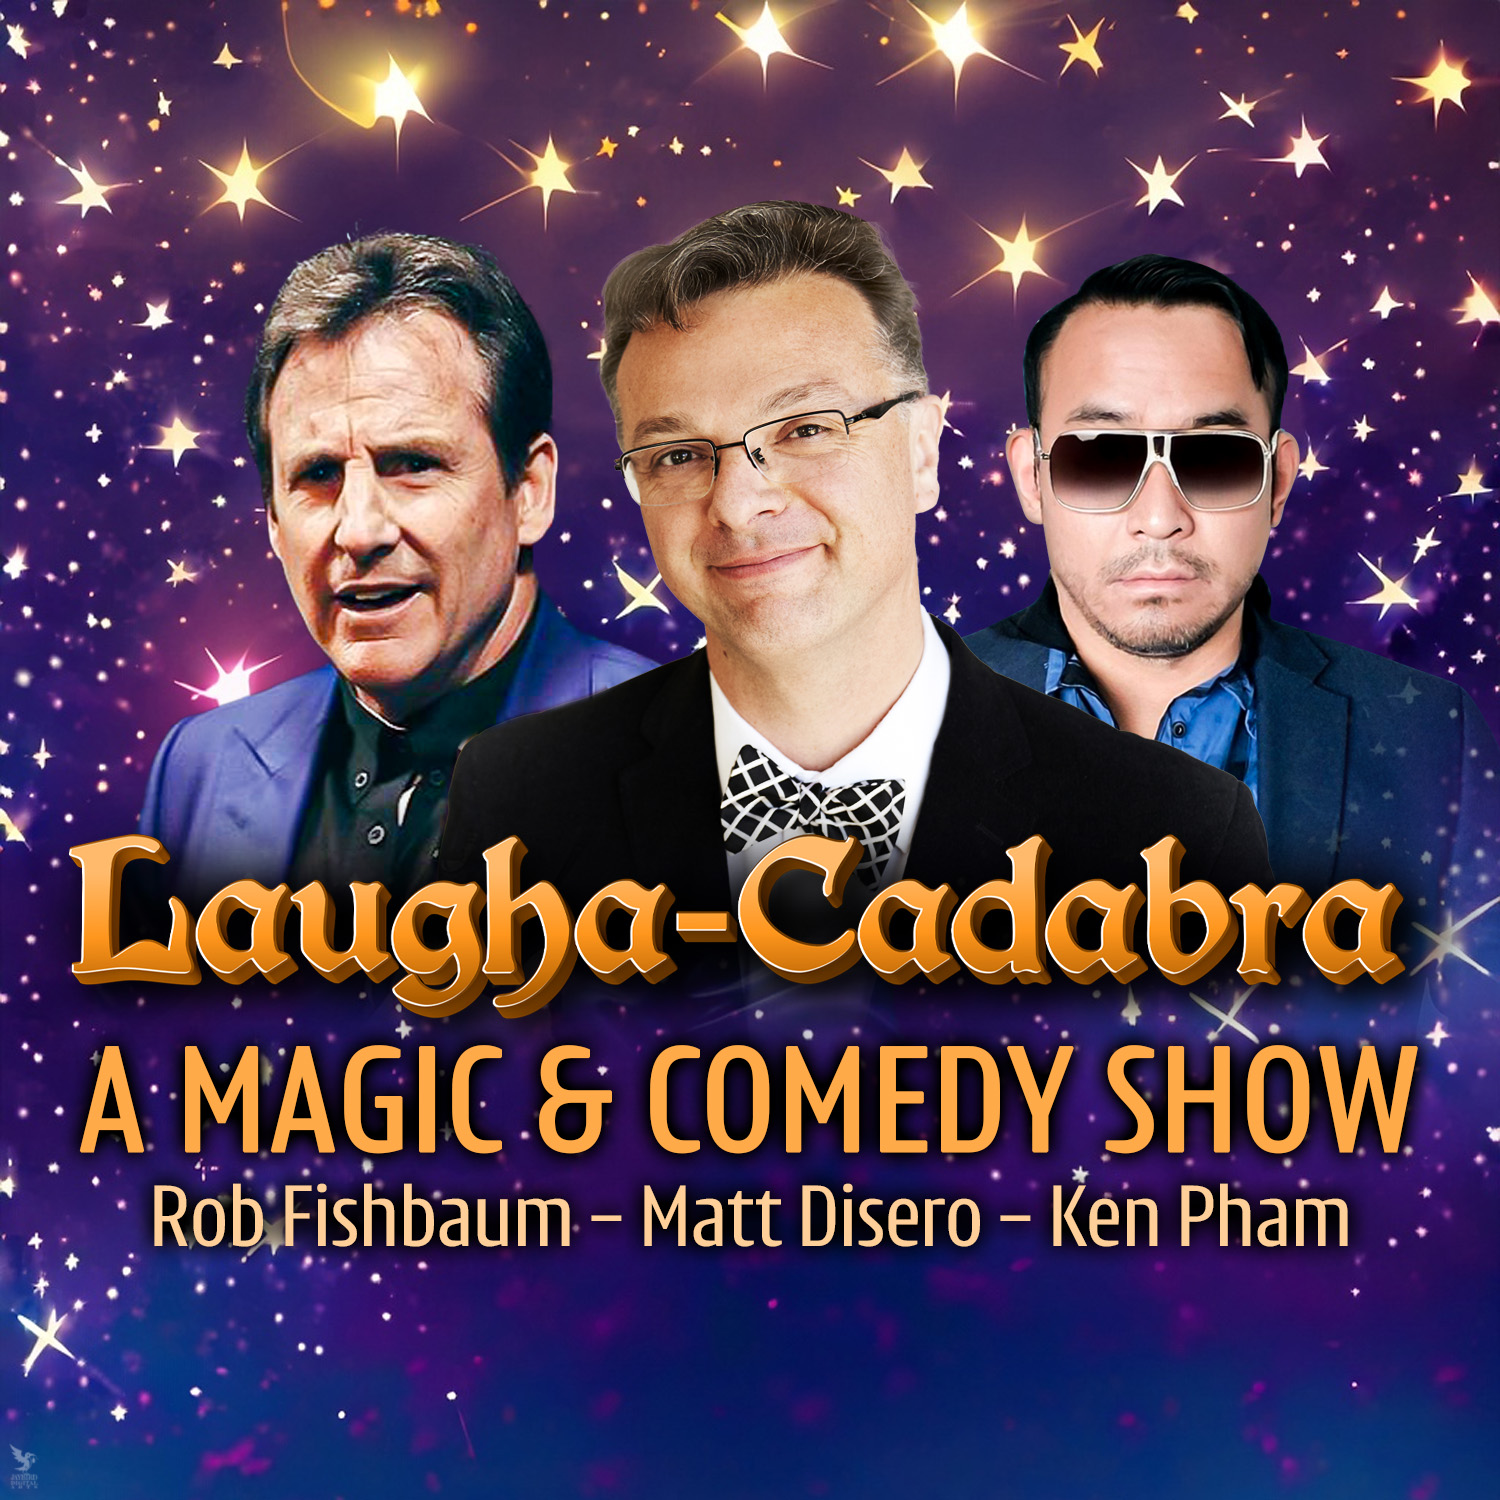 Event image Laugha-Cadabra: a Comedy Magic Show